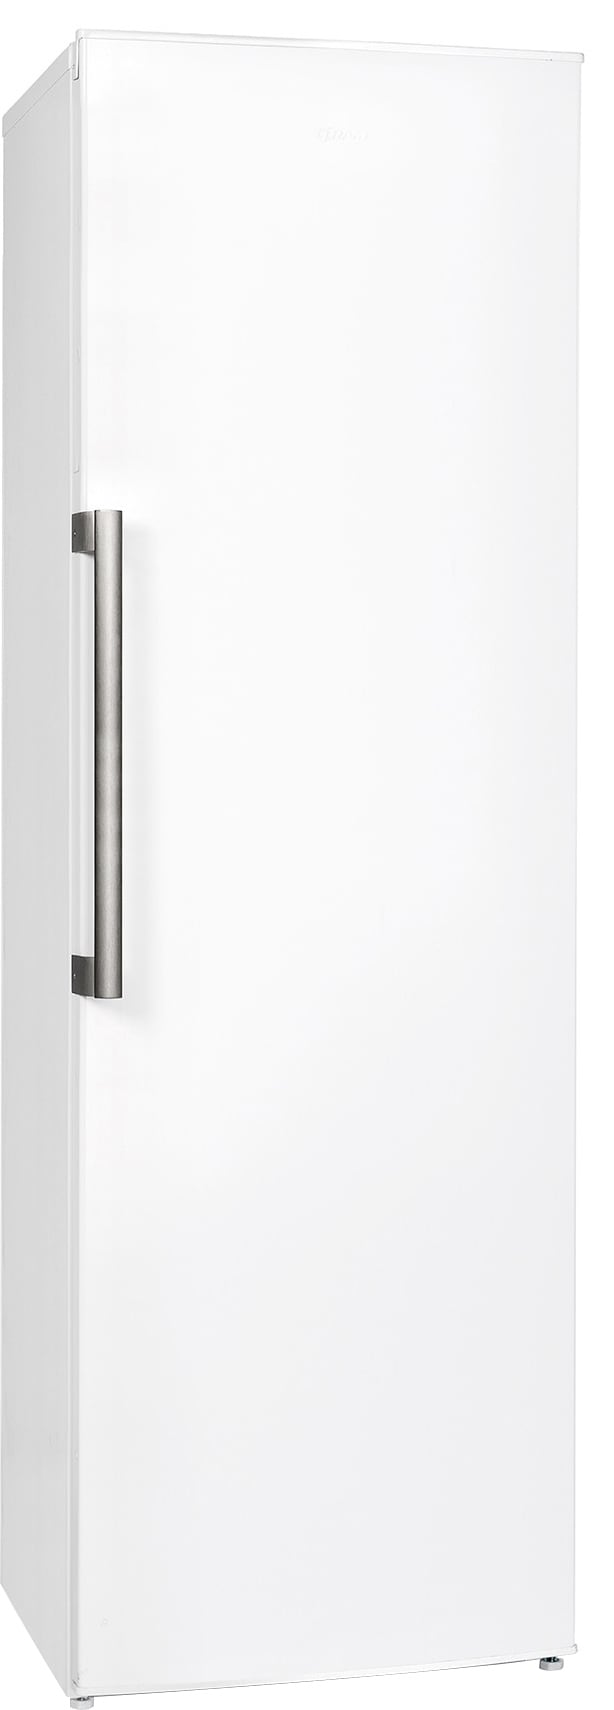 Gram fridge KS 3315-93/1 - Gigantti verkkokauppa